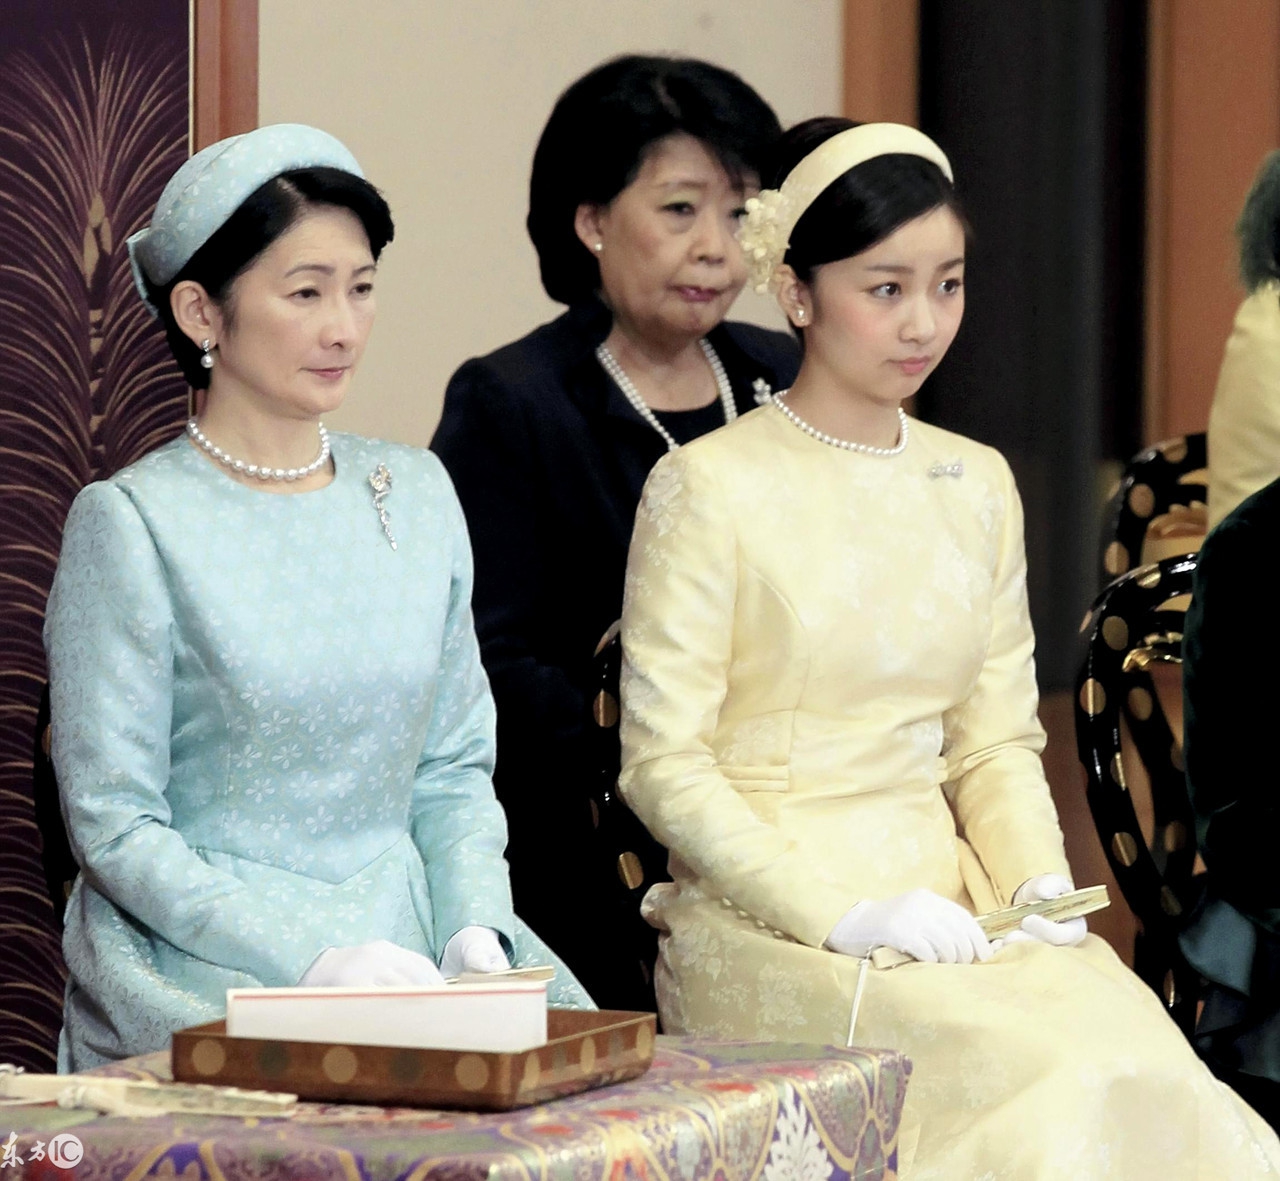 她们是日本皇室"最美妯娌",有关她们之间的传闻堪称"宫斗剧"